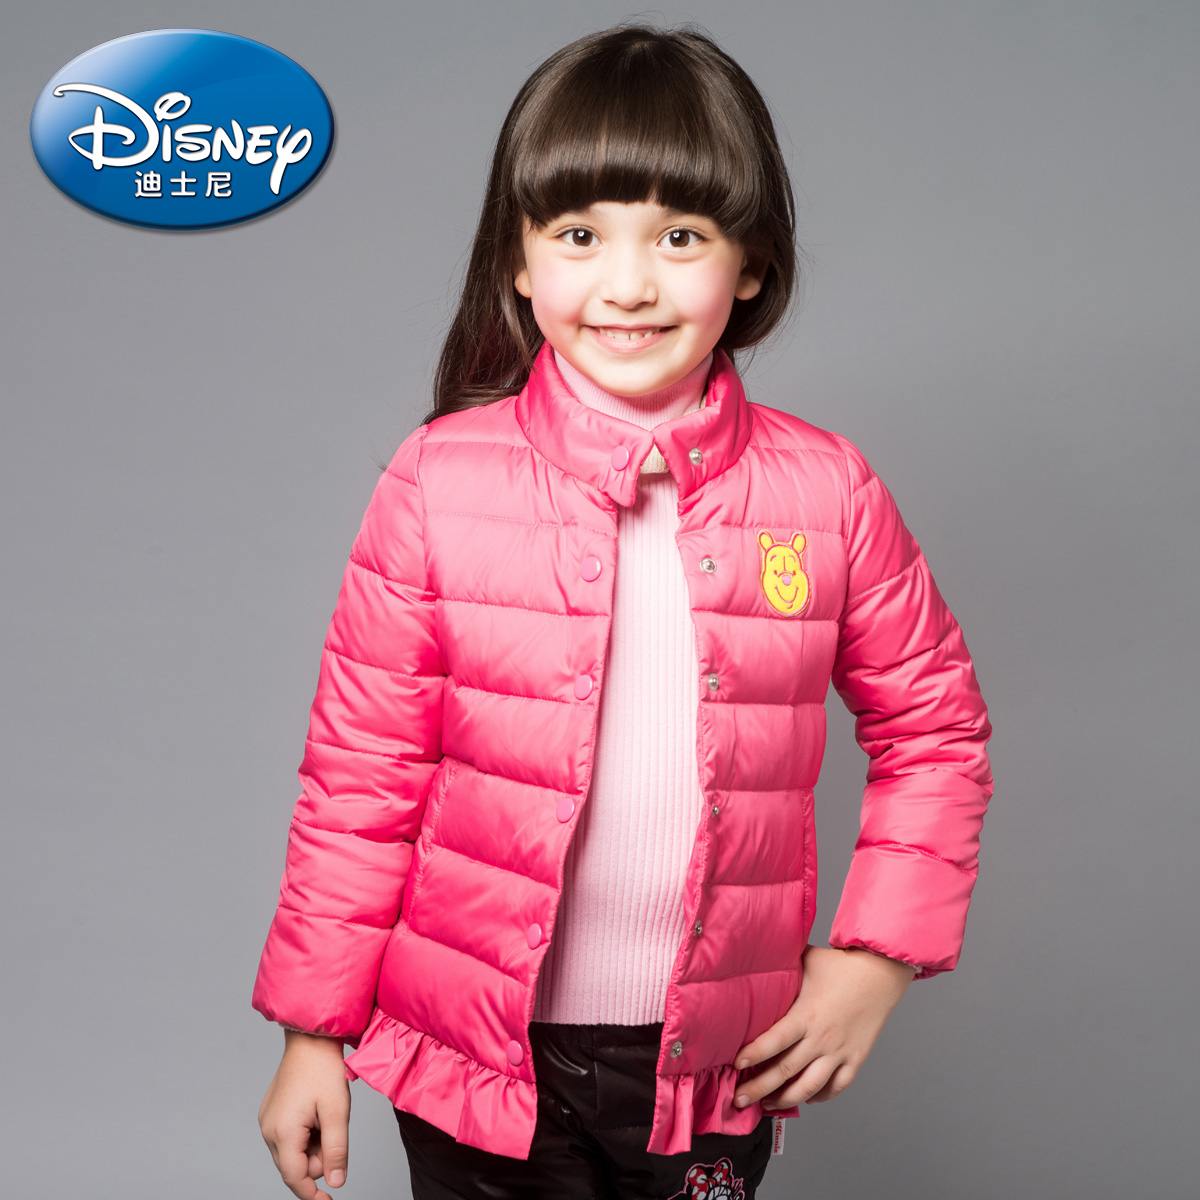 绿盒子童装迪士尼女童 修身花边长袖羽绒服 2015秋冬新款儿童外套